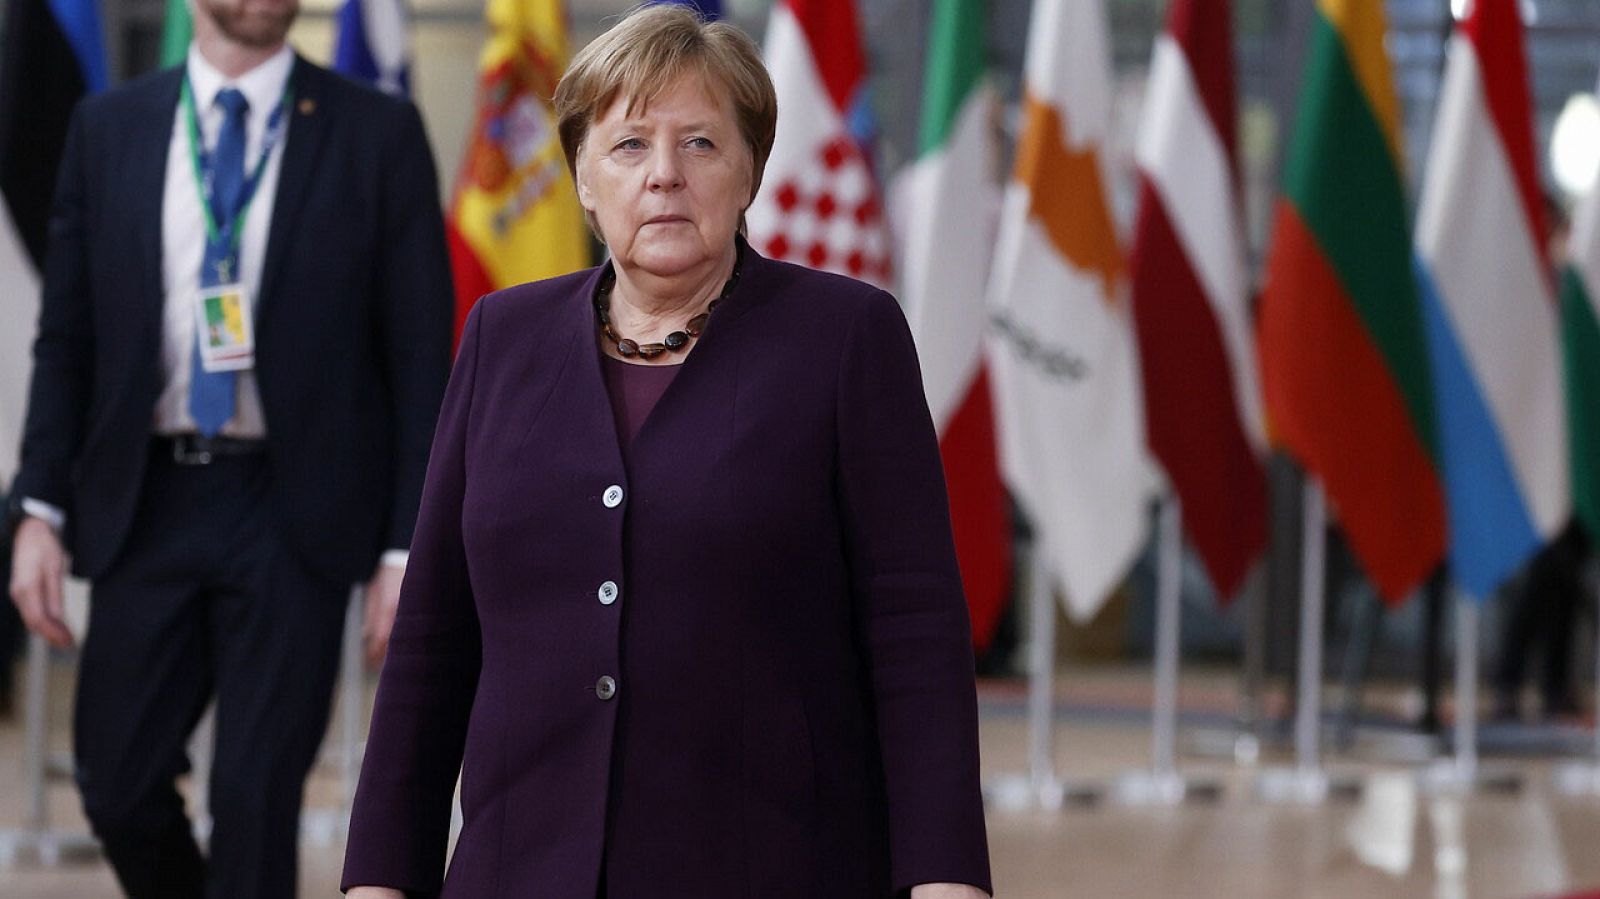 Merkel condena los ataques xenófobos de la ciudad alemana de Hanau: "El racismo es veneno" - RTVE.es